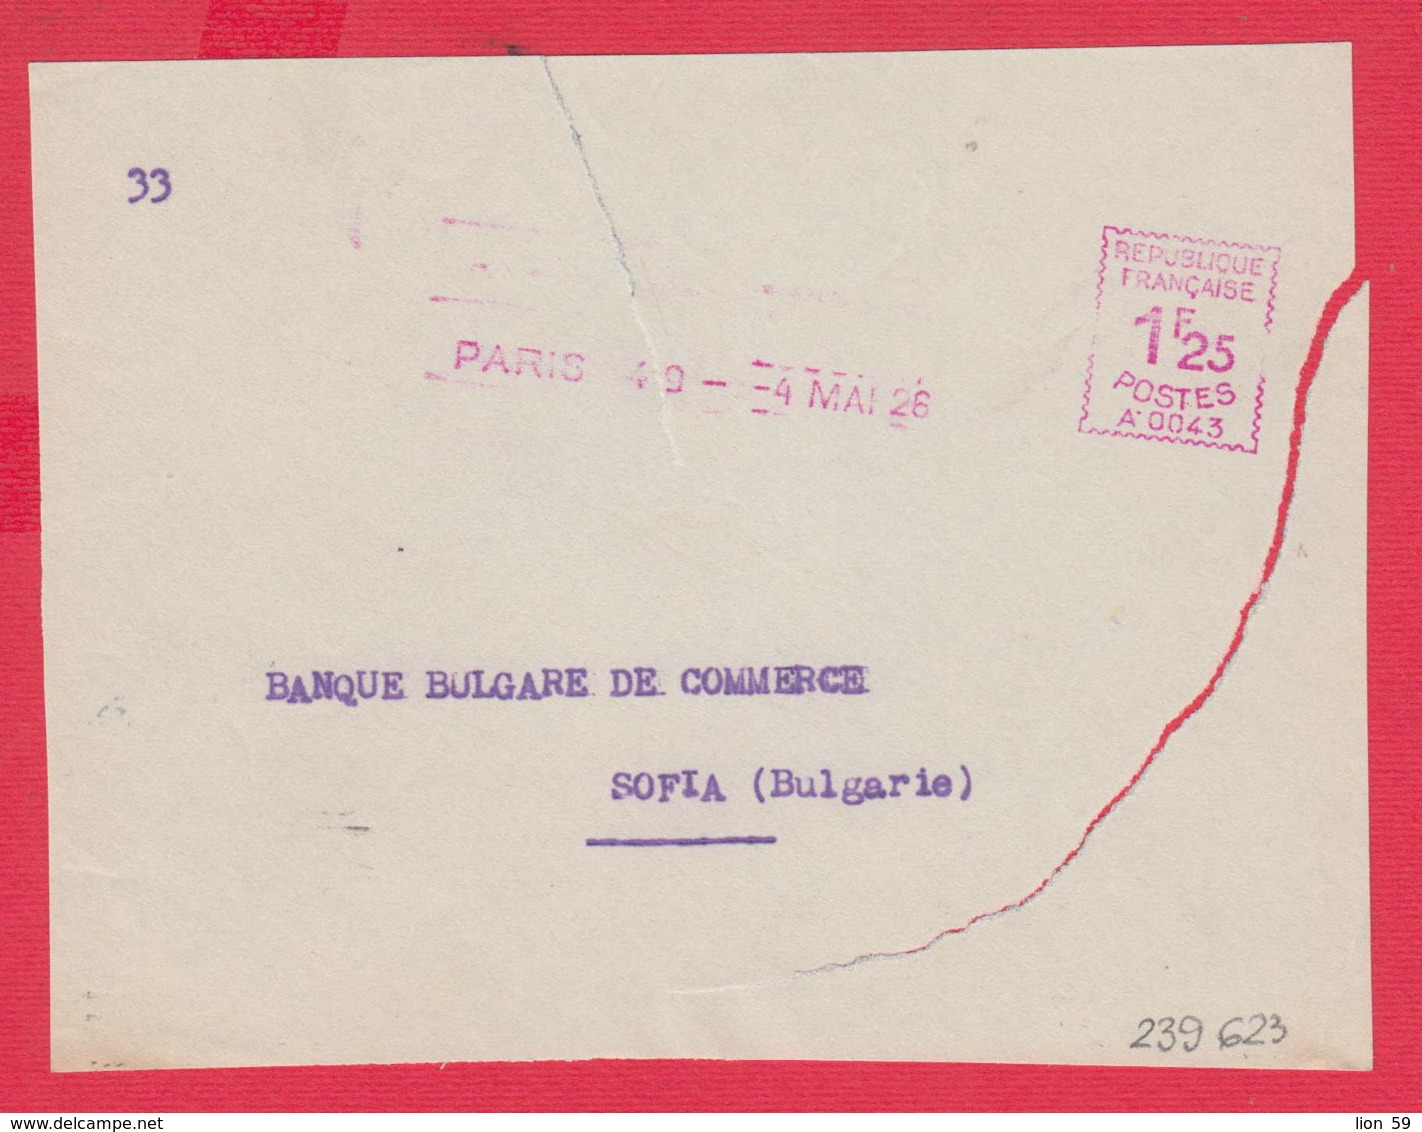 239623 / France PARIS 49 - 4 MAI 1926 - 1,25 F. ( A. 0043 ) , EMA (Printer Machine) TO BANQUE BULGARE DE COMMERCE - EMA (Printer Machine)